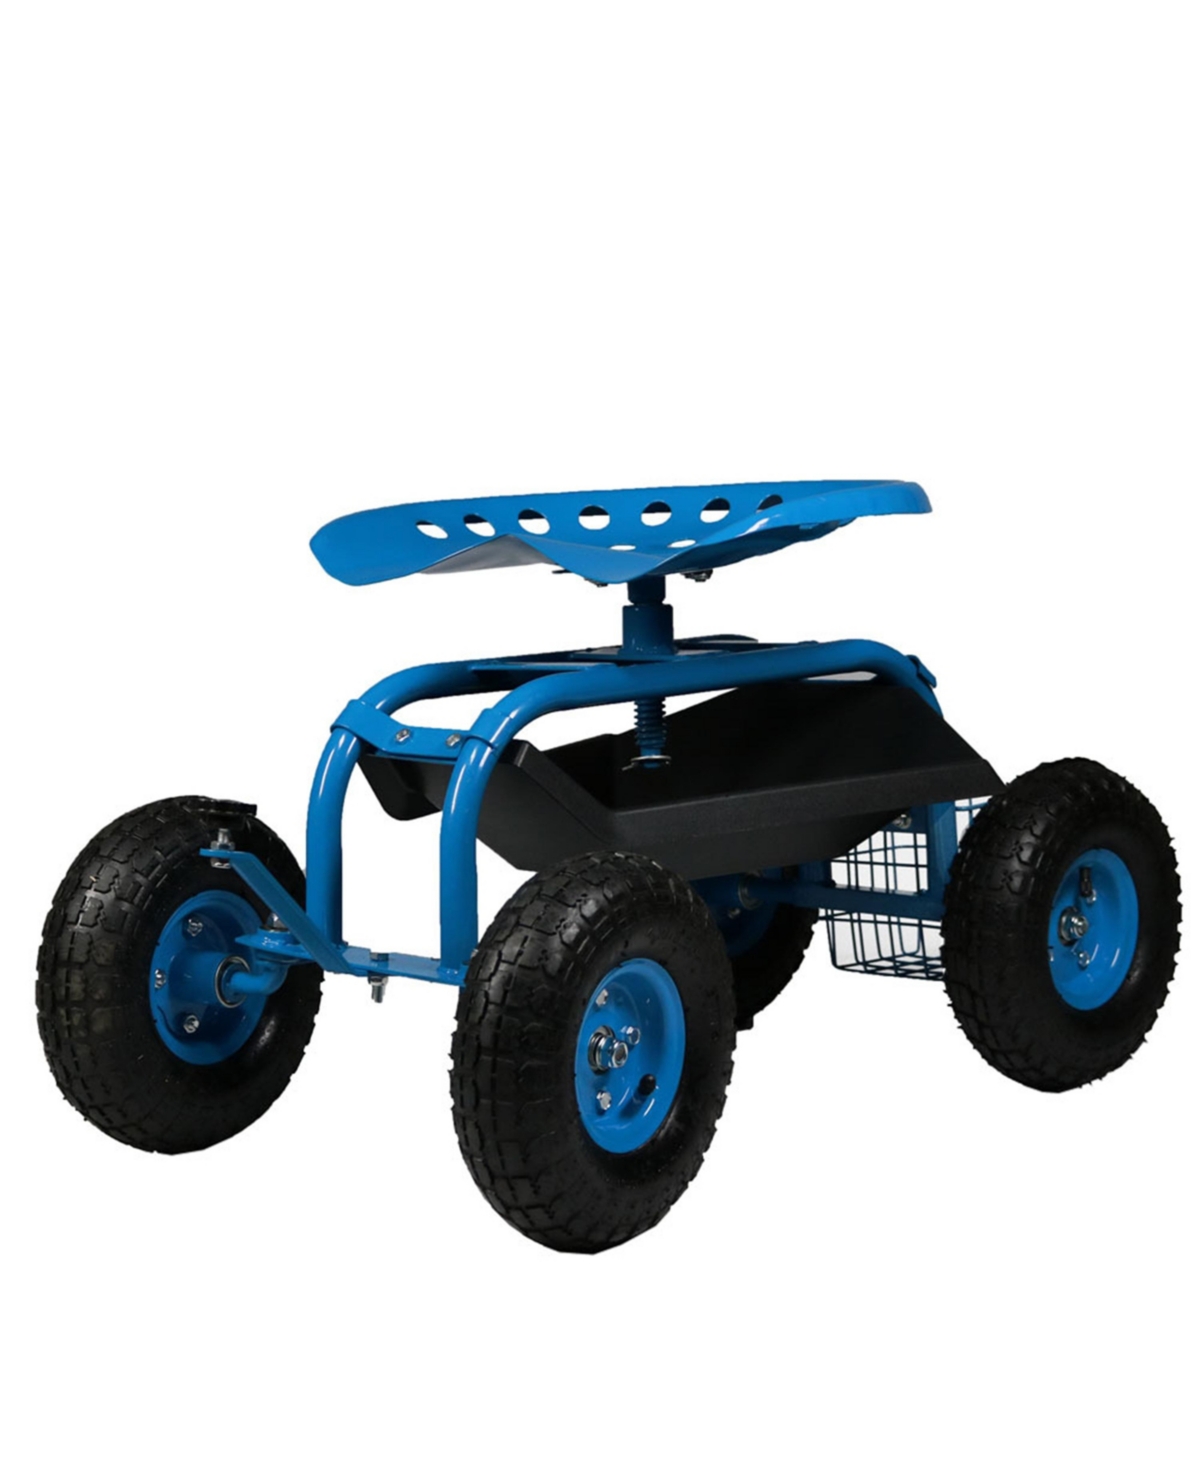 Steel Rolling Garden Cart with Swivel Steering/Basket - Blue - Blue